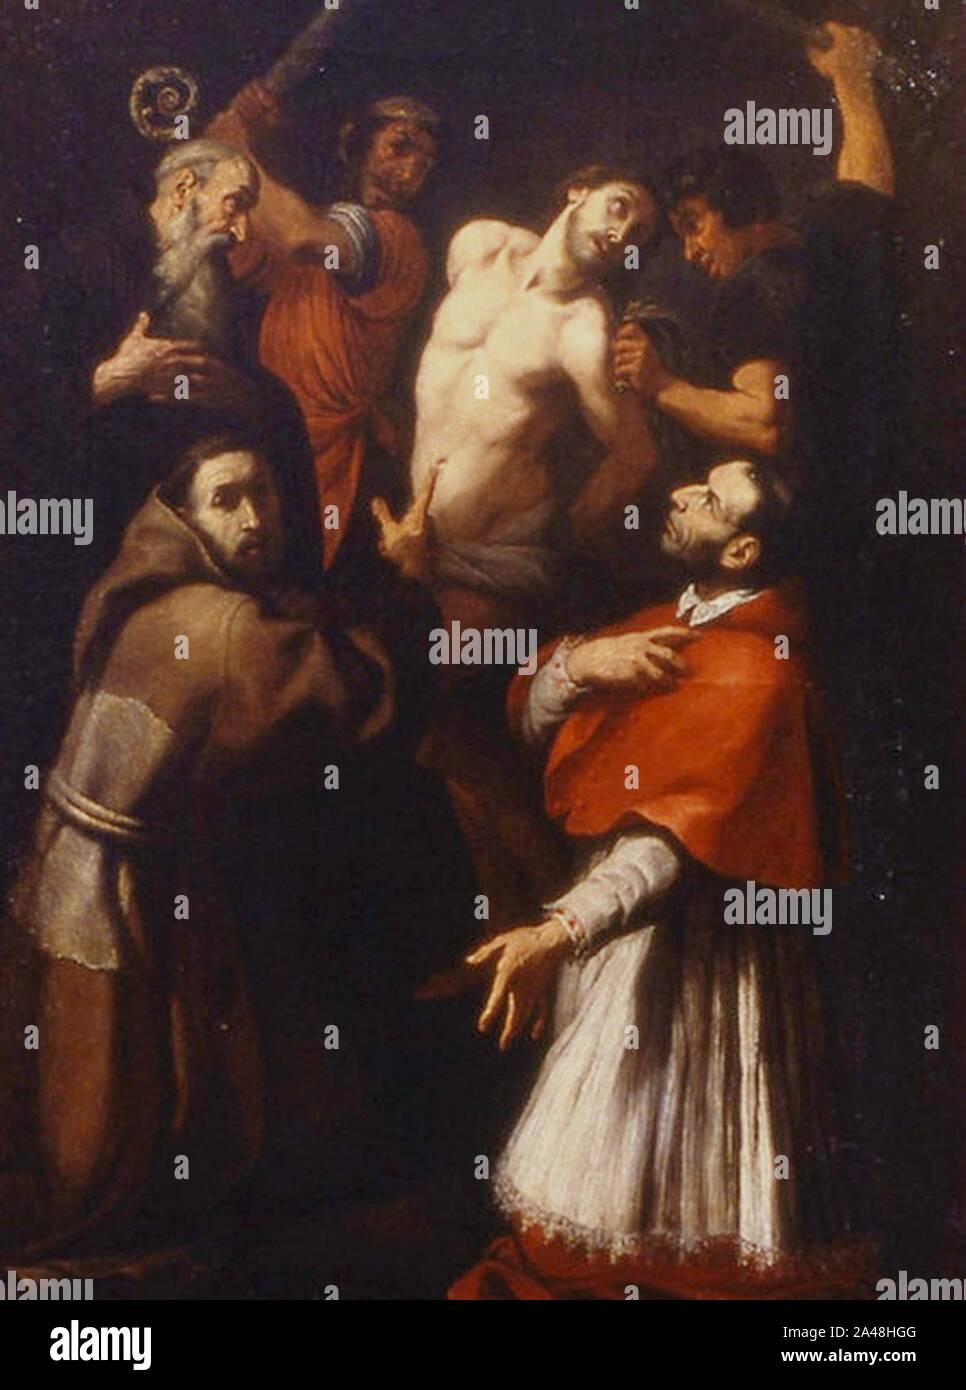 Flagellazione con santi - Daniele Crespi. Stock Photo